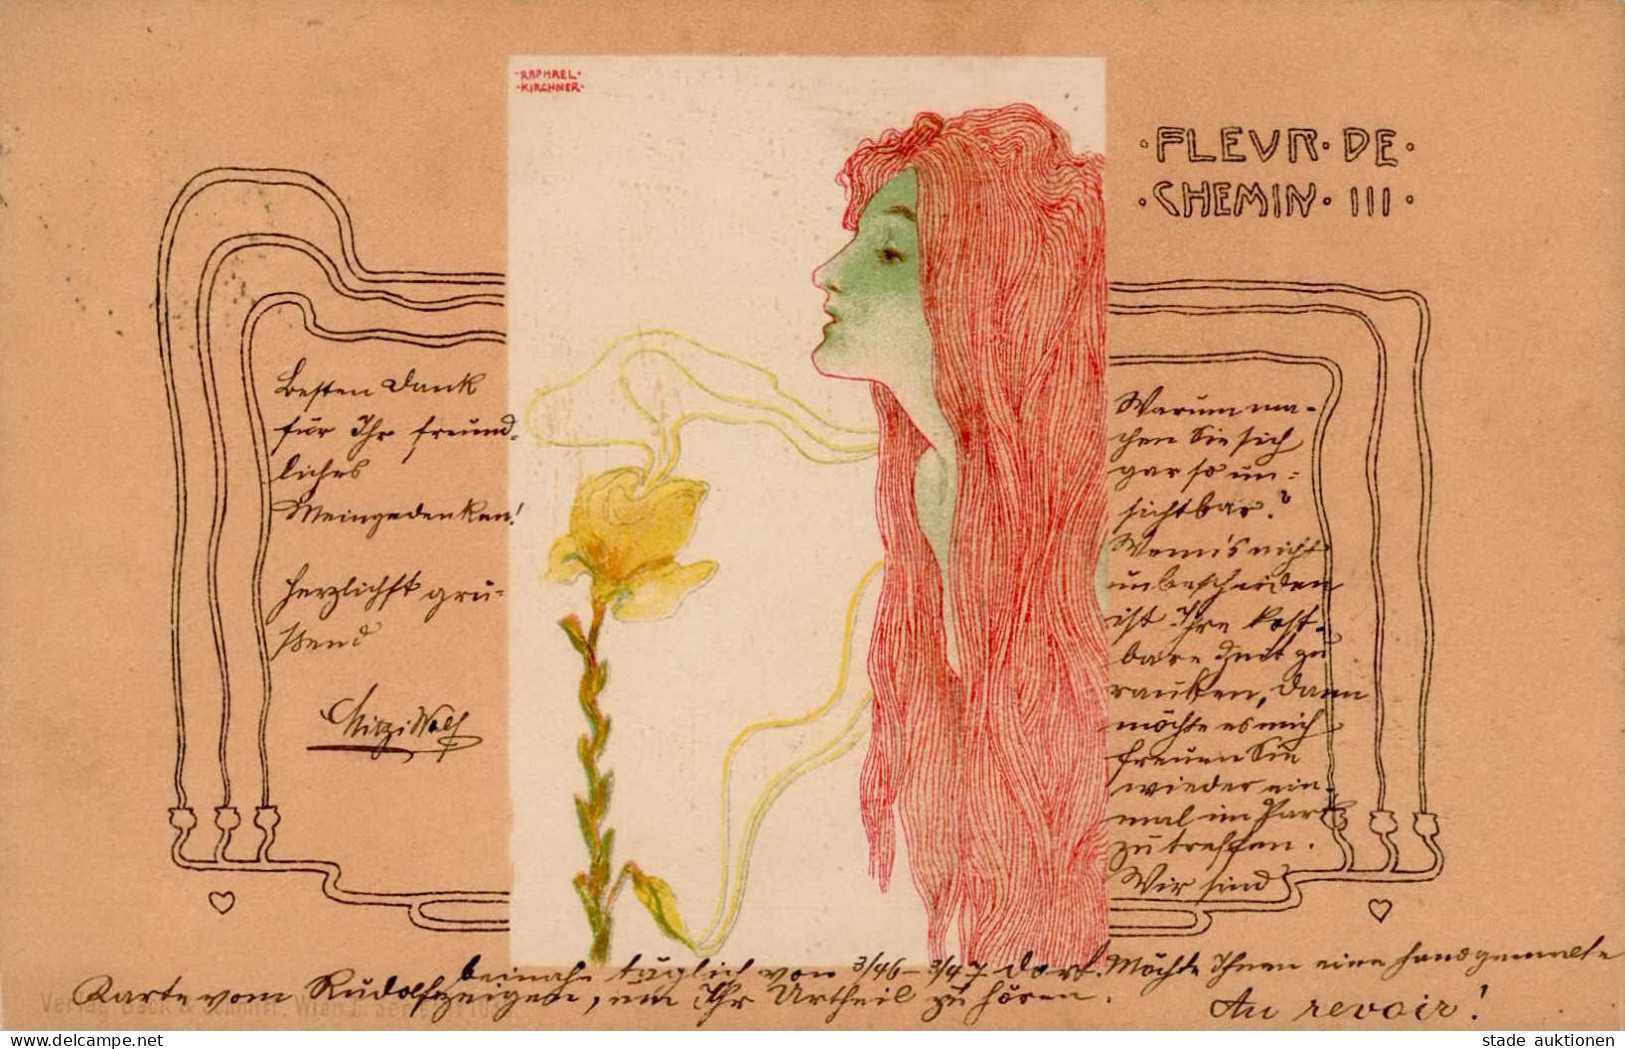 Kirchner, Raphael Jugendstil Fleur De Chemin III I-II Art Nouveau - Kirchner, Raphael